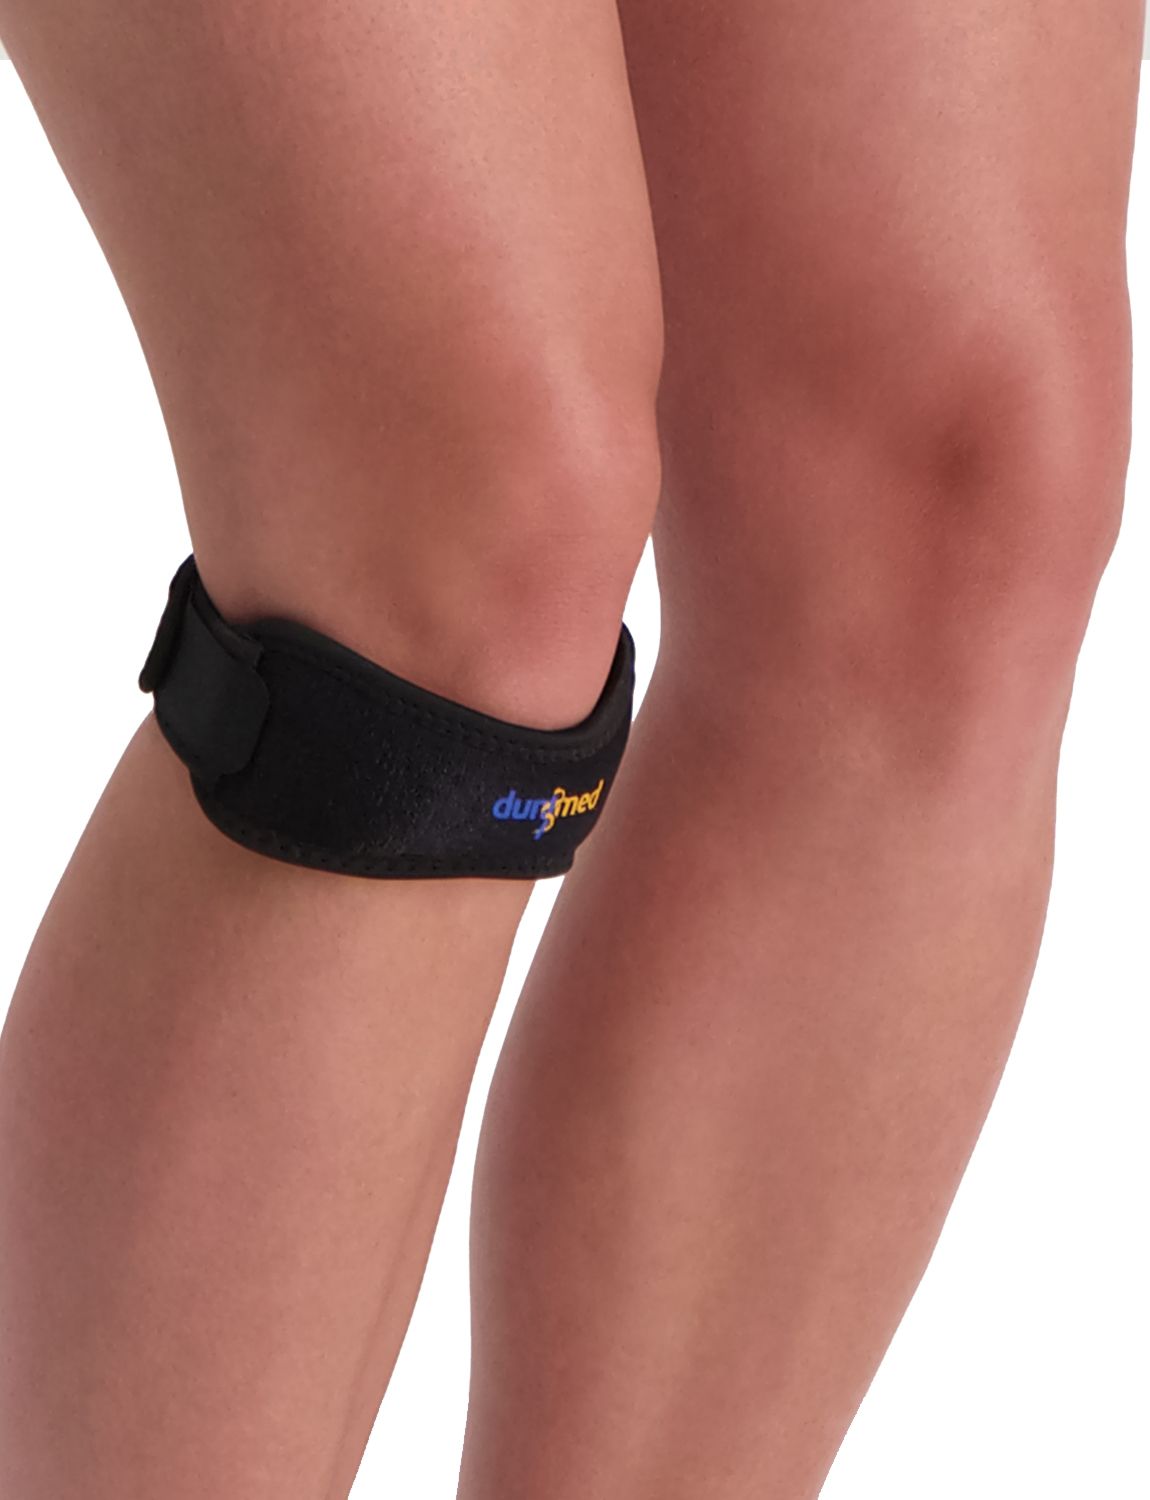 dunimed knee strap for sale